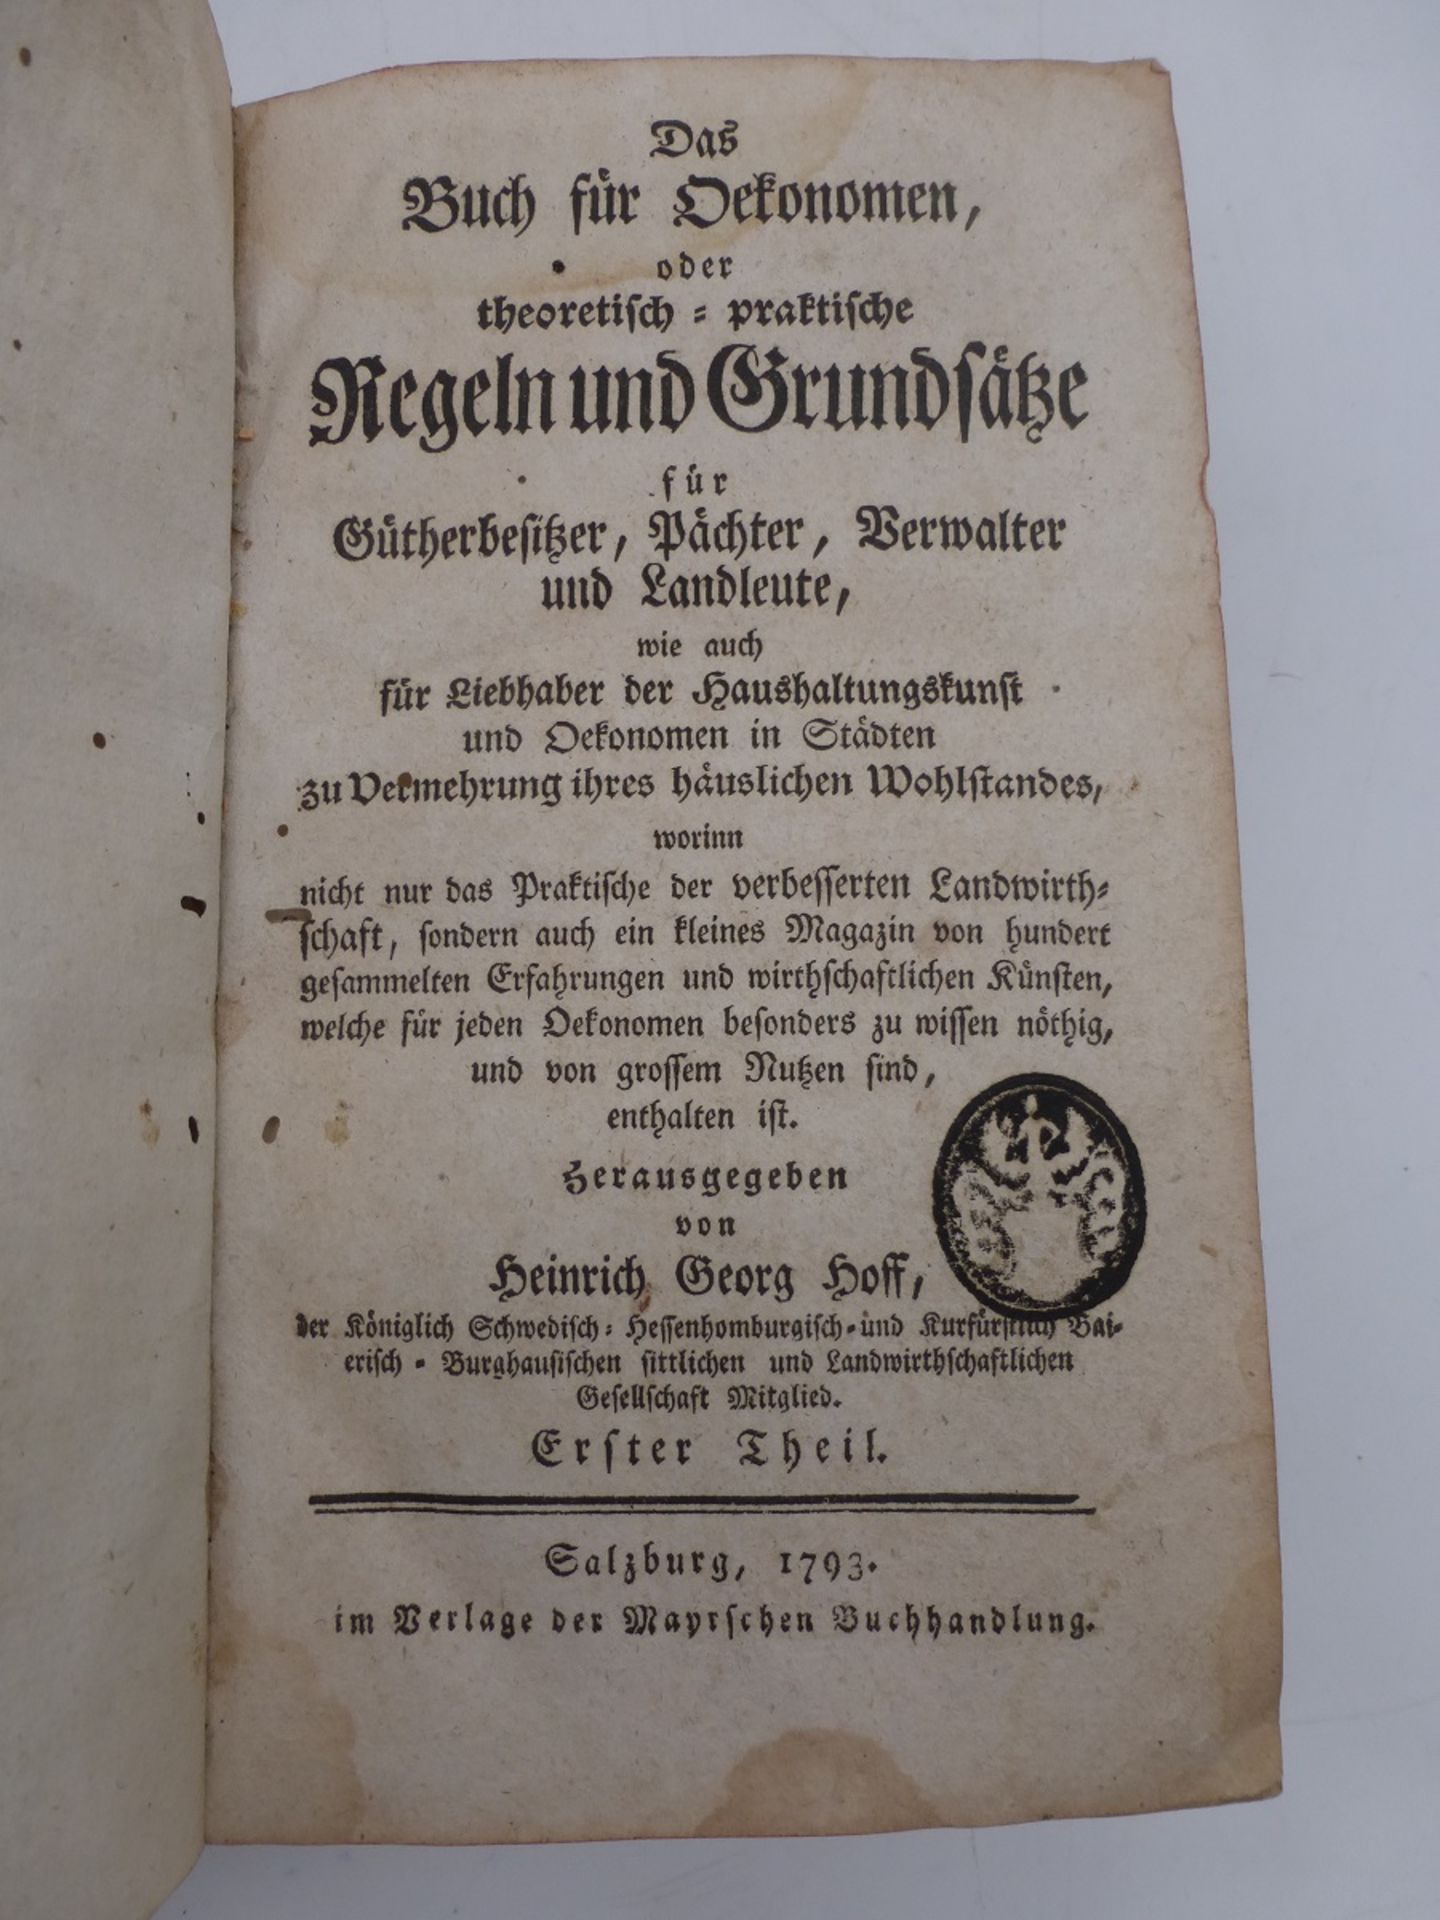 Das Oekonomen Buch / Salzburg 1793 - Image 2 of 2